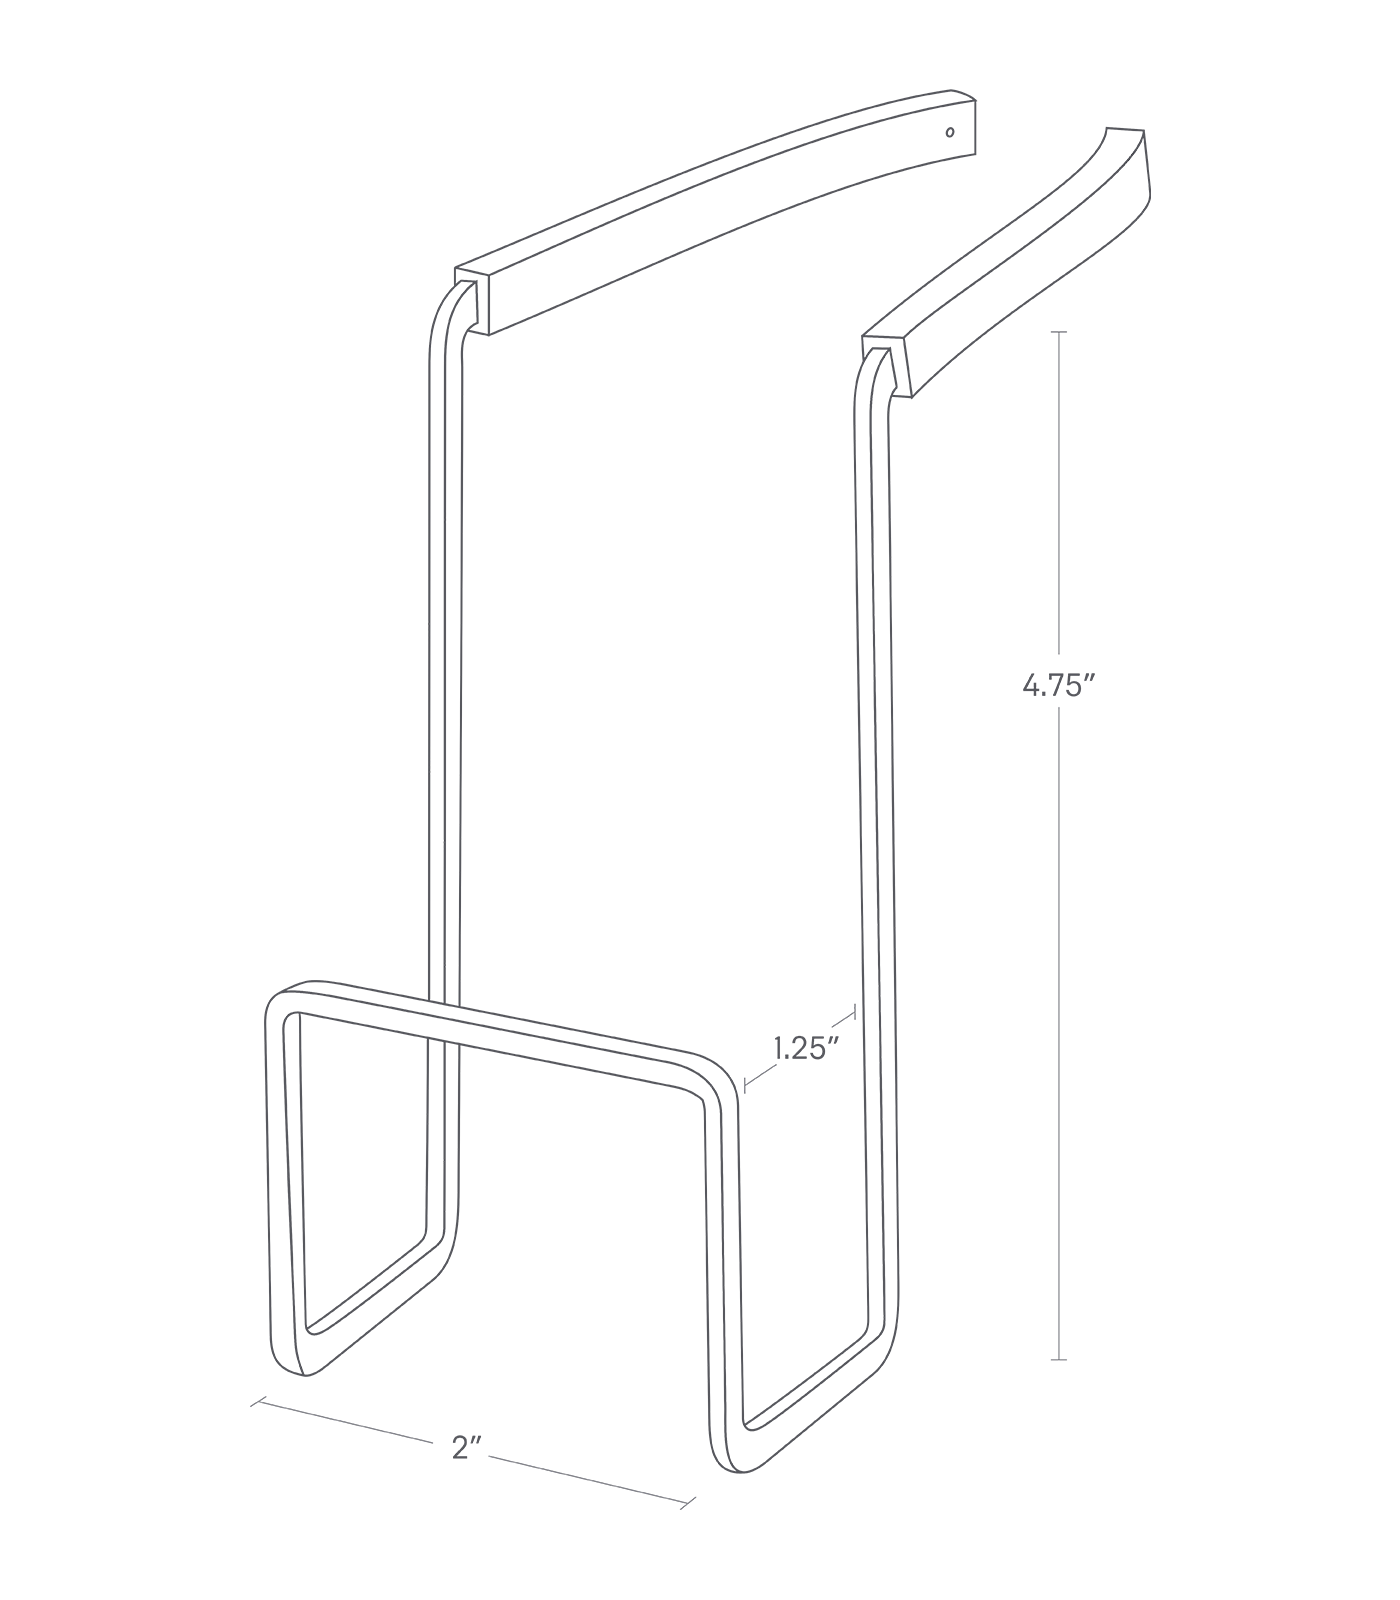 Dimension image for Faucet-Hanging Sponge Holder showing length of 2